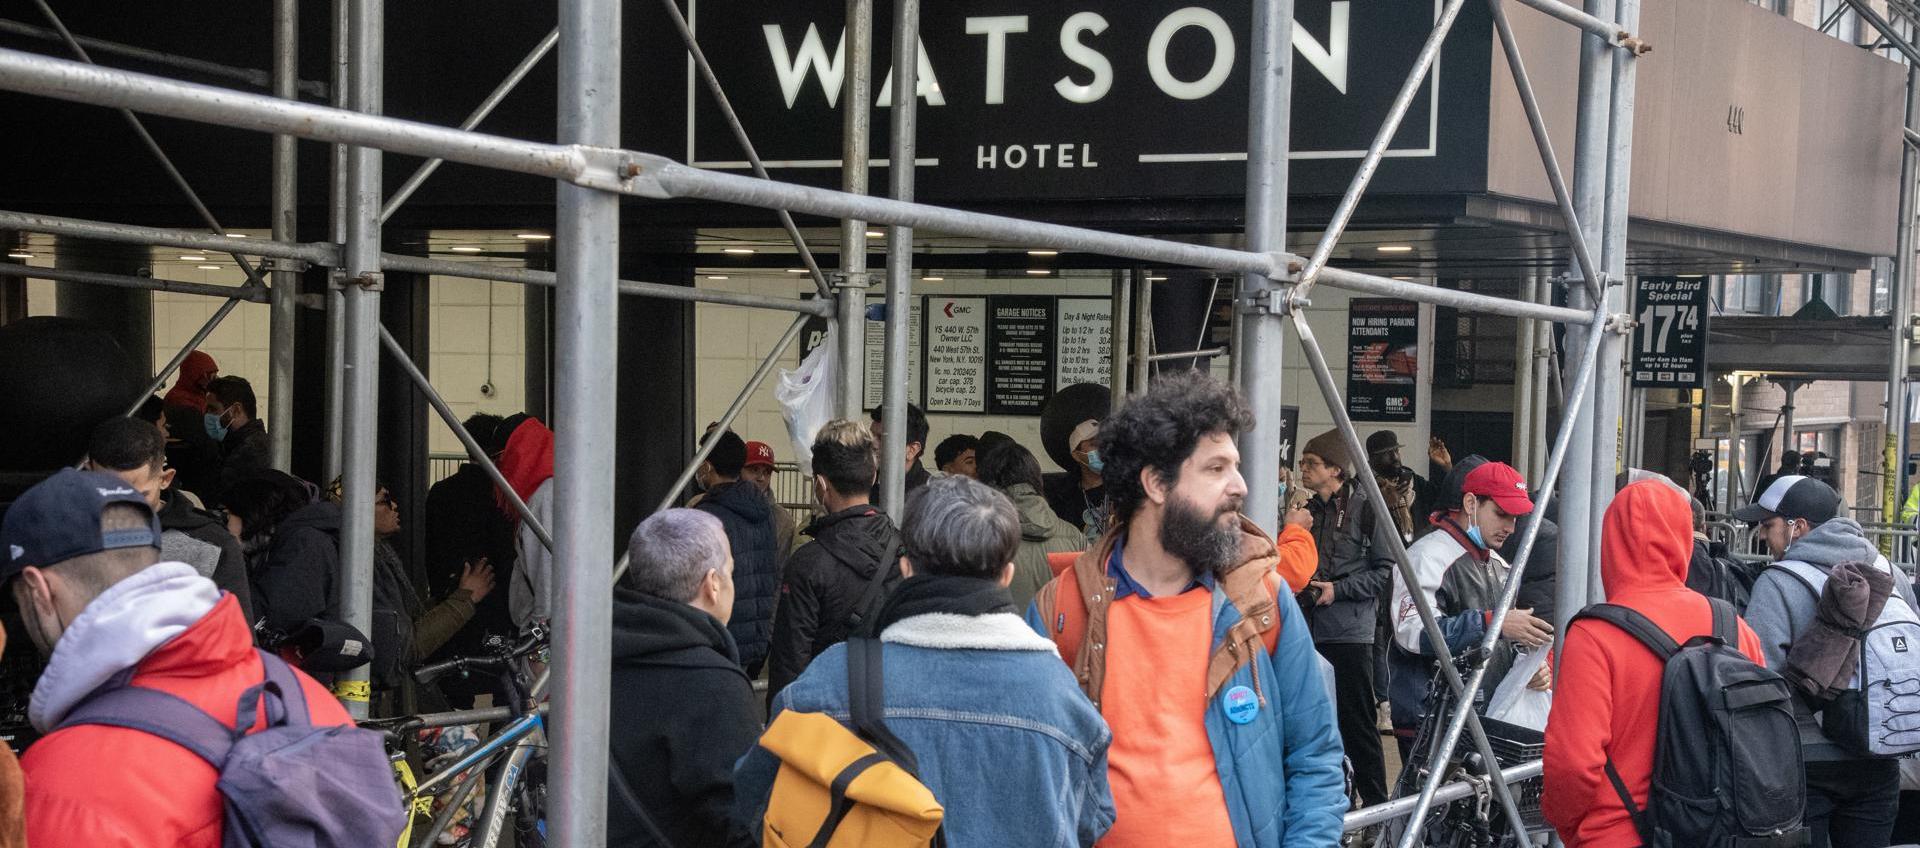  Migrantes que han estado alojados temporalmente en The Watson Hotel en Nueva York